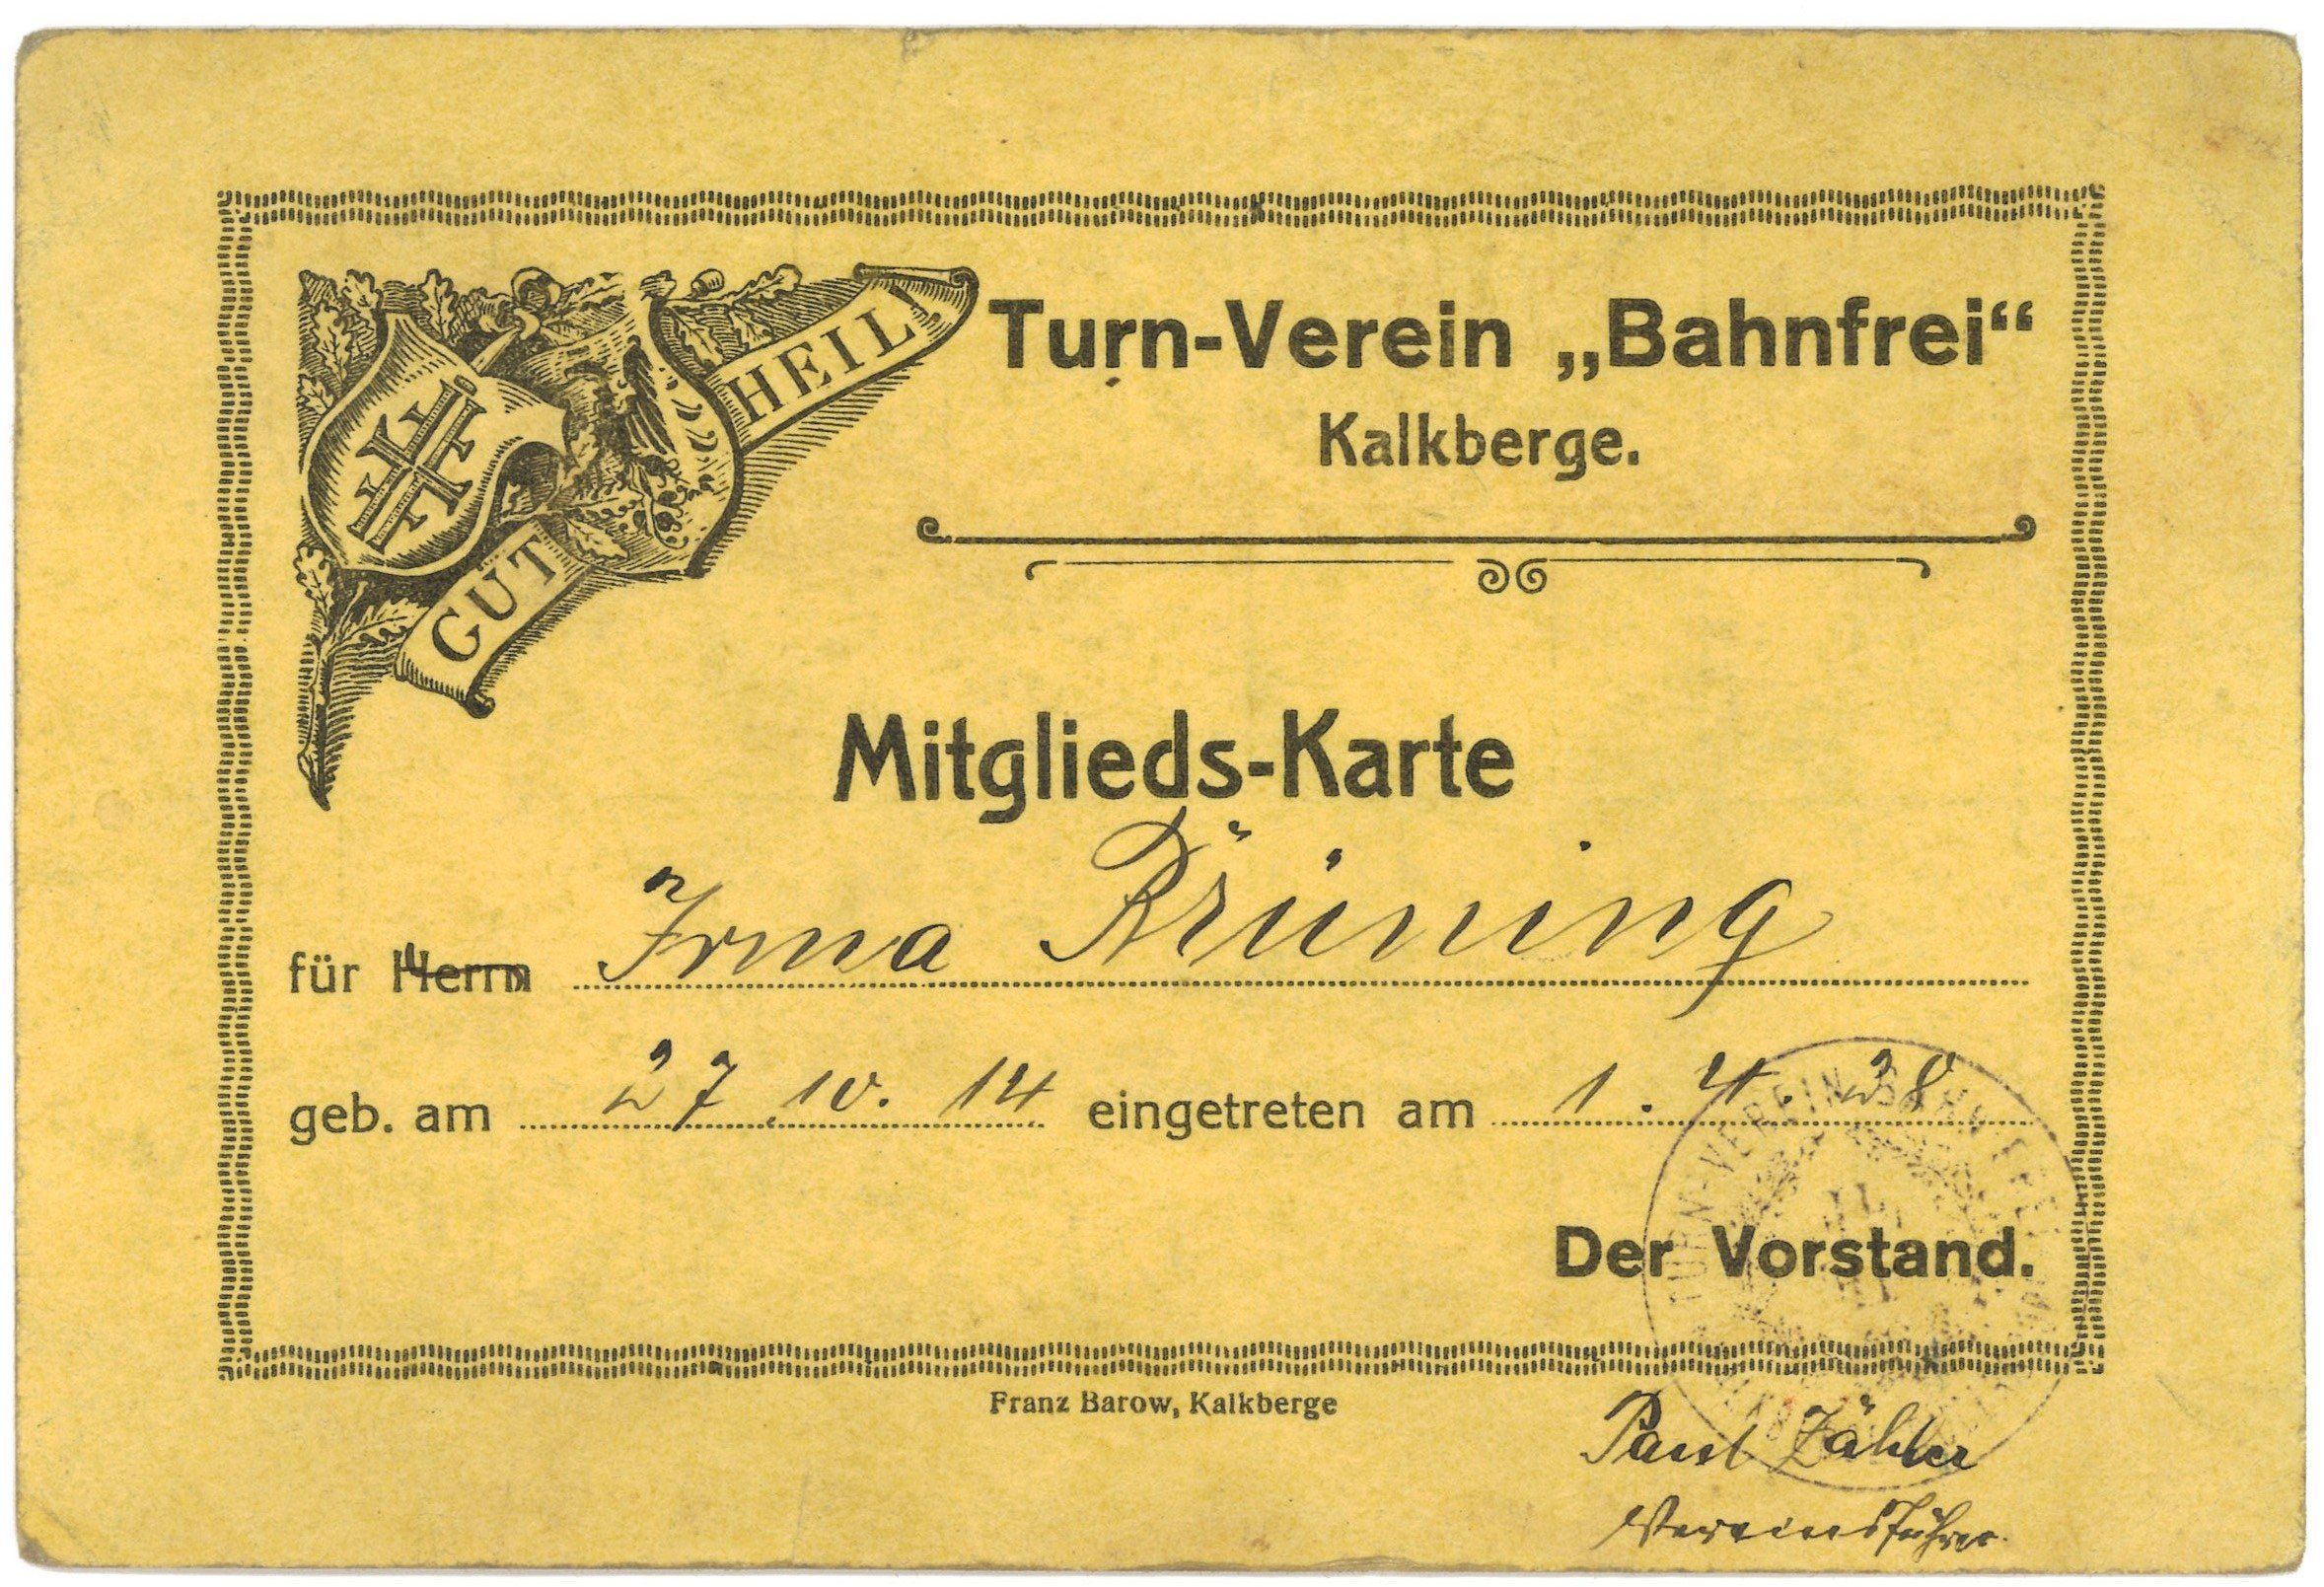 Mitgliedskarte des Turn-Vereins "Bahnfrei" in Kalkberge für Irma Brüning (Landesgeschichtliche Vereinigung für die Mark Brandenburg e.V., Archiv CC BY)